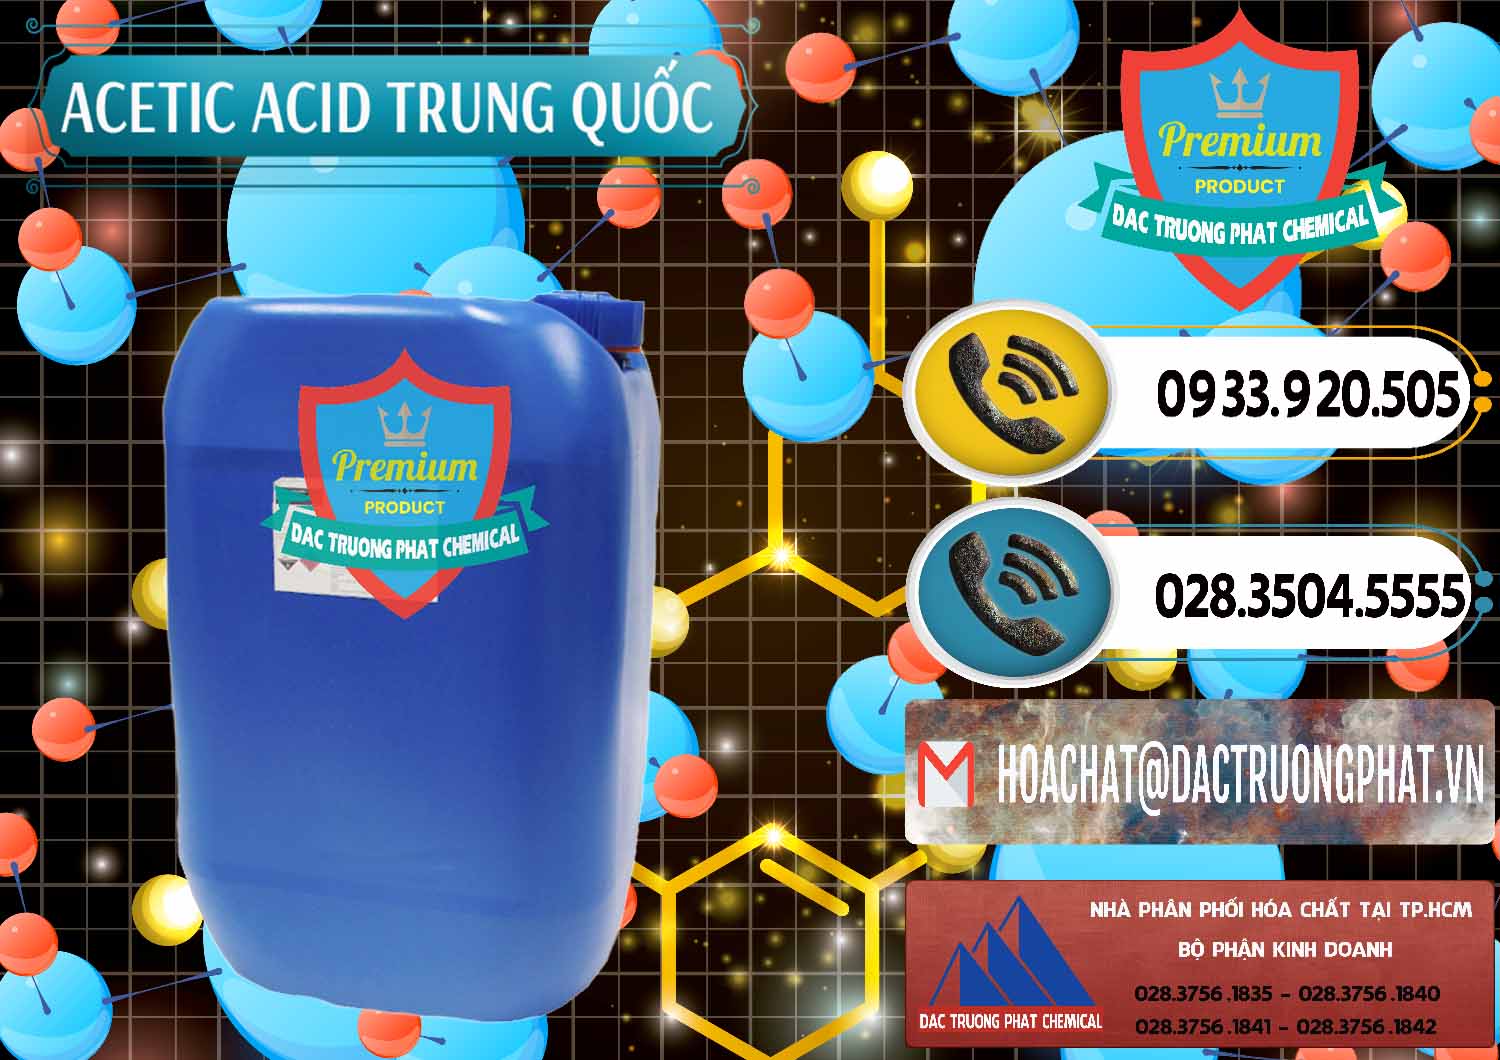 Cty chuyên bán ( cung cấp ) Acetic Acid – Axit Acetic Trung Quốc China - 0358 - Công ty phân phối - bán hóa chất tại TP.HCM - hoachatdetnhuom.vn